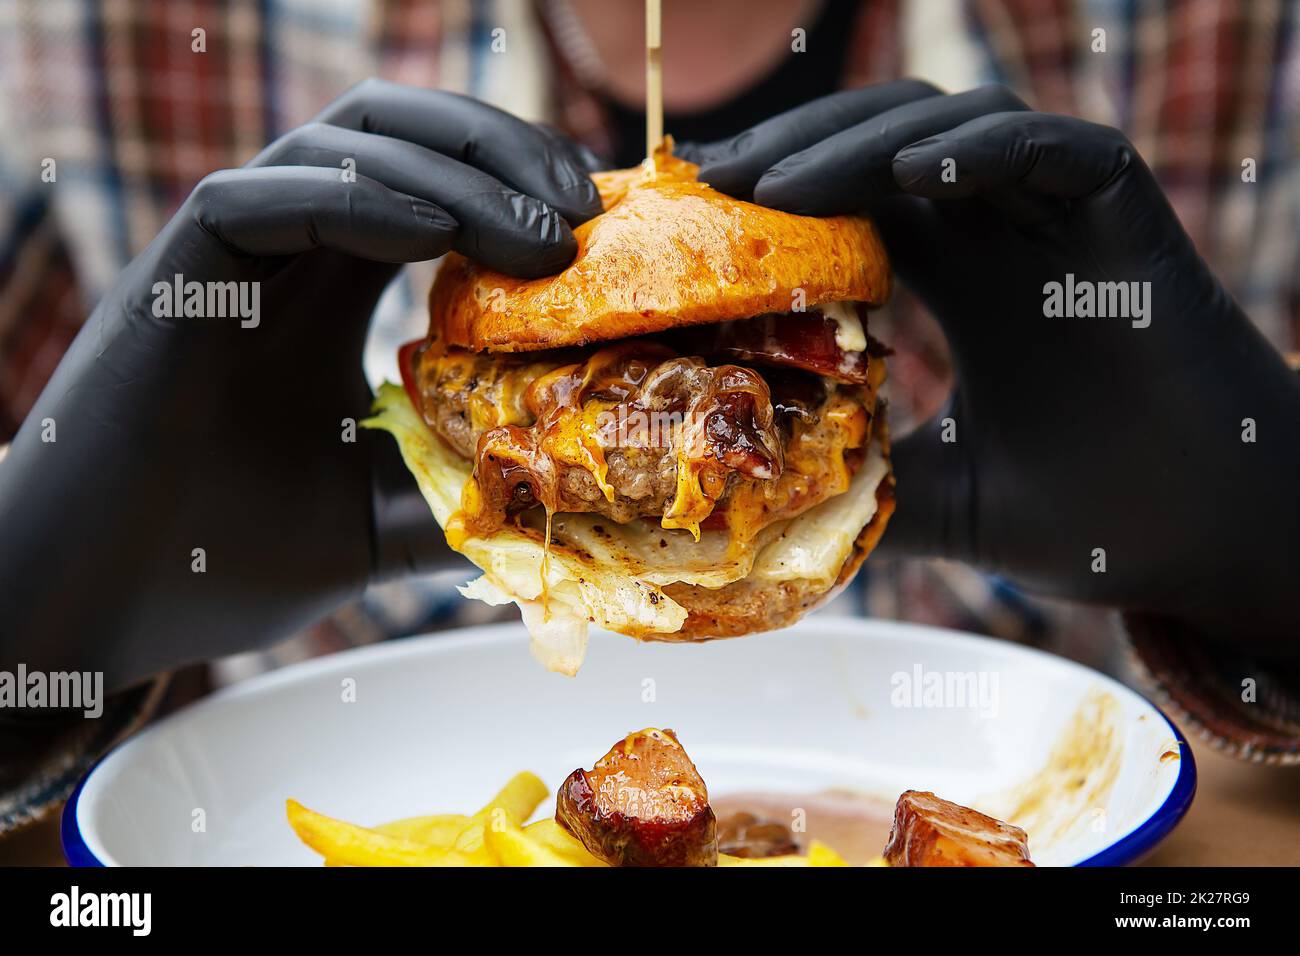 Das Konzept von Fast Food und Essen zum Mitnehmen. Ein Mann in schwarzen Latexhandschuhen hält einen saftigen Hamburger in den Händen, liegt neben pommes Frites auf einem Metallteller zusammen mit Käsesauce. Stockfoto